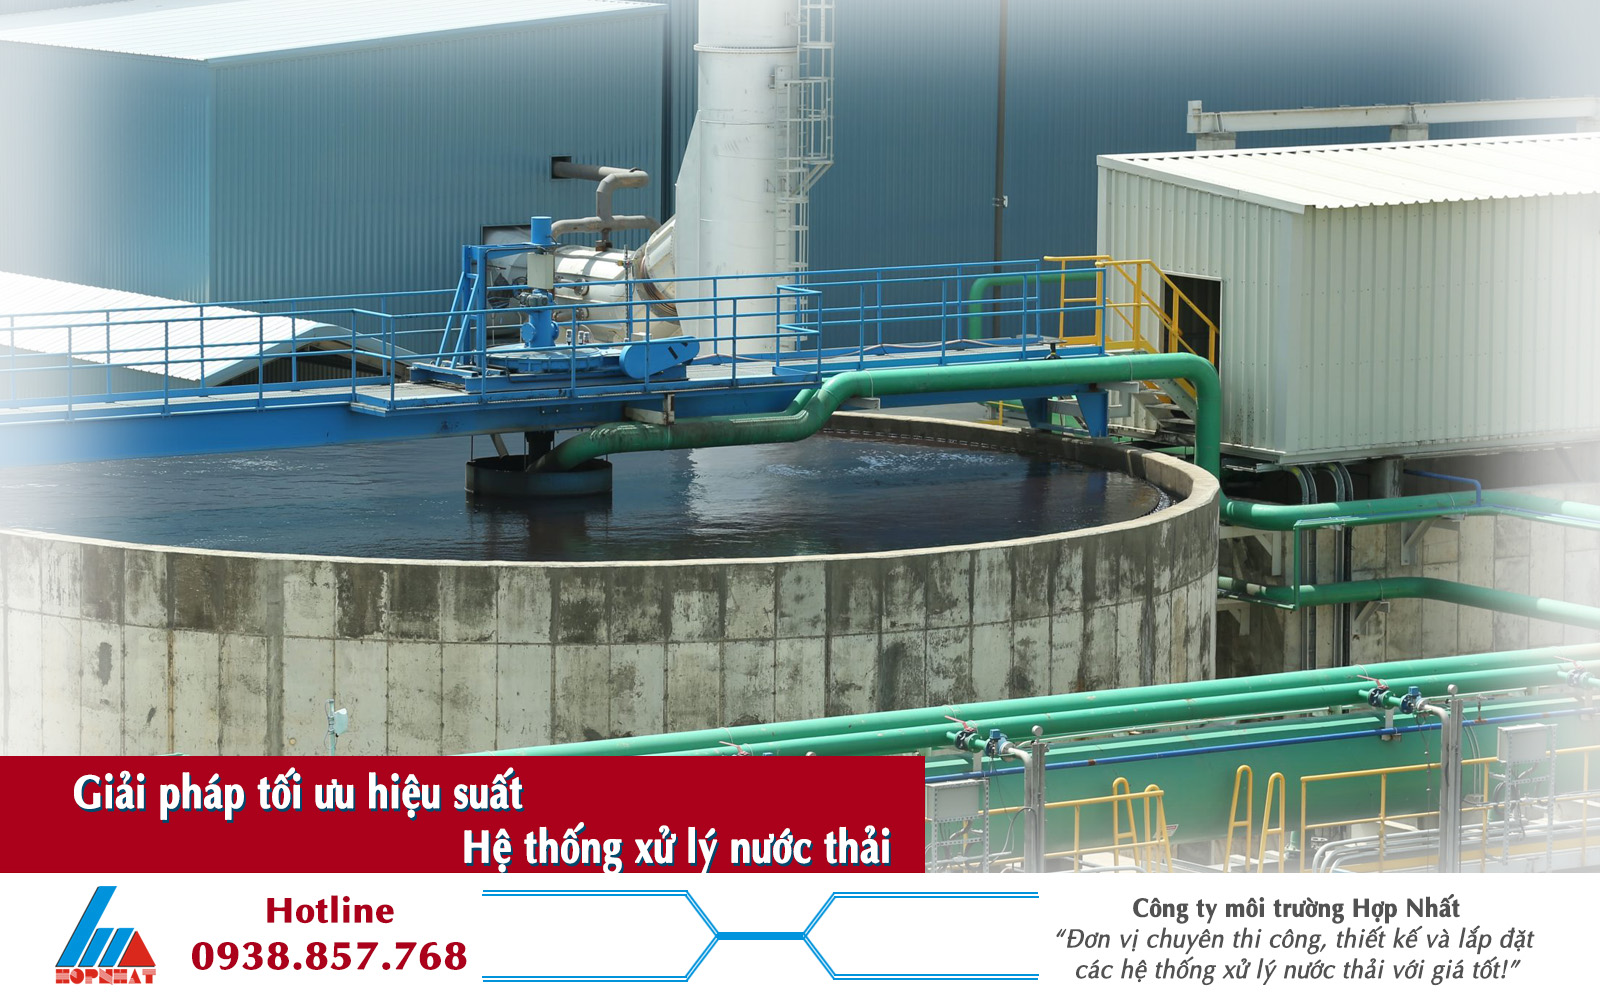 Cách tối ưu hóa hiệu suất của hệ thống xử lý nước thải